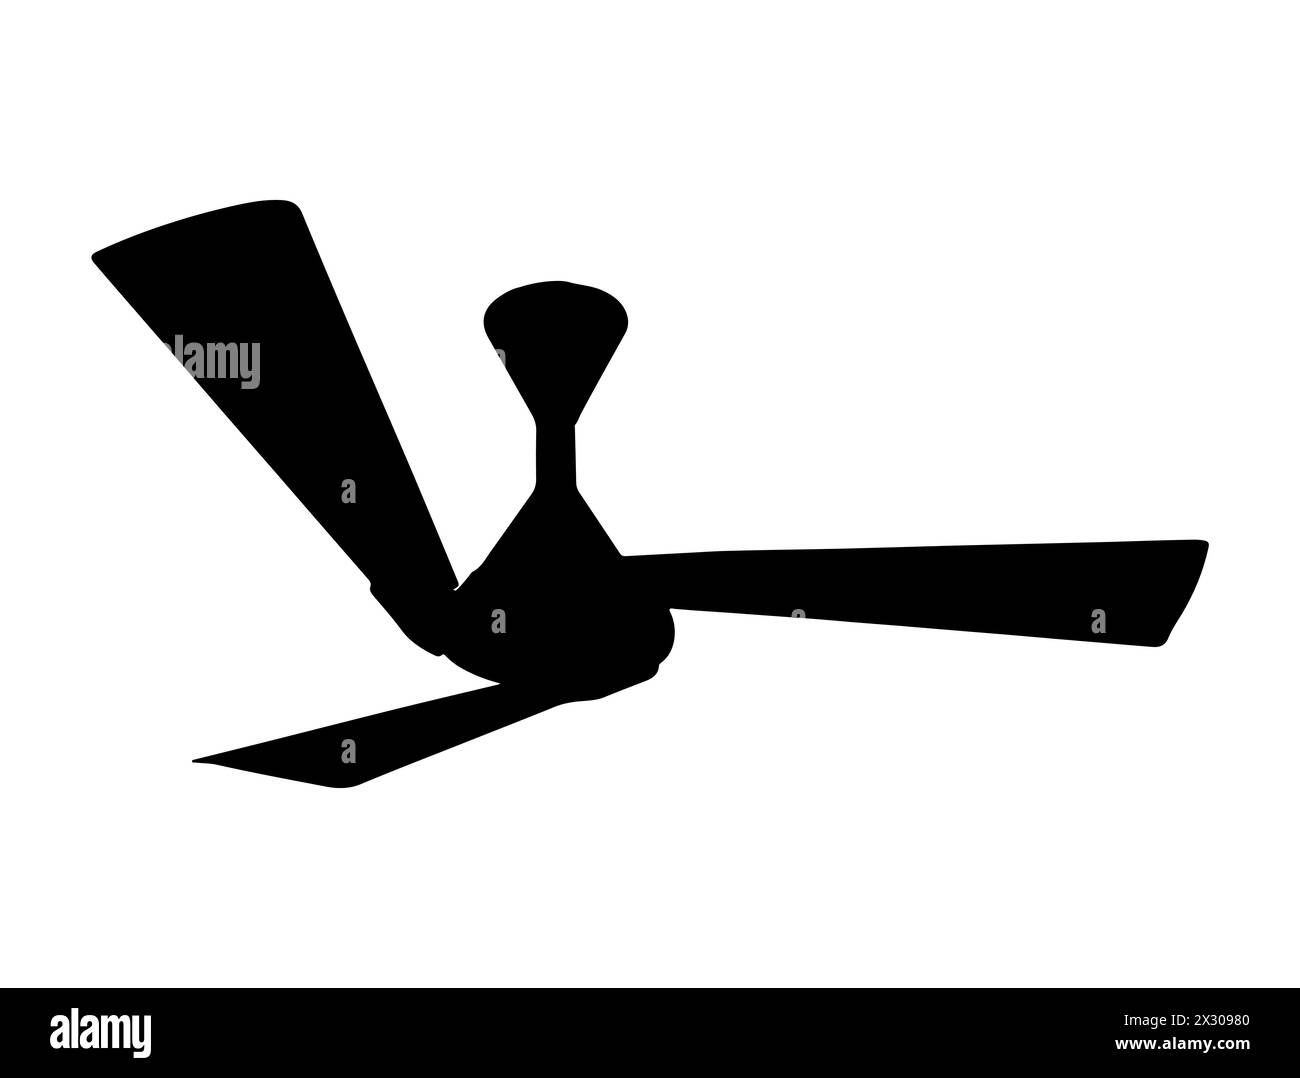 Disegno vettoriale silhouette ventilatore a soffitto Illustrazione Vettoriale